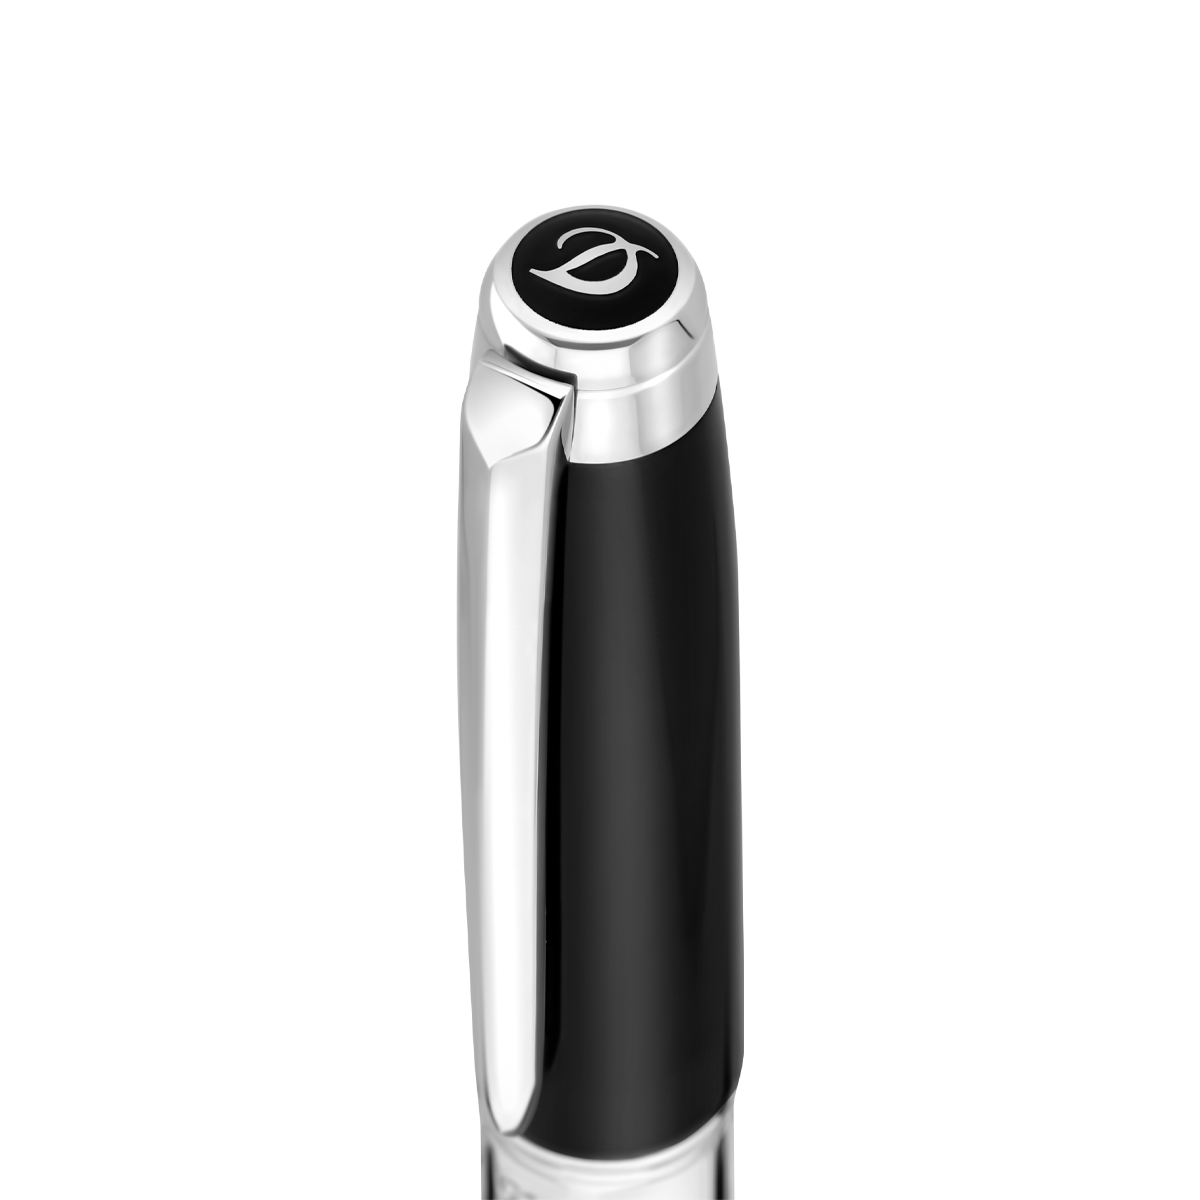 Шариковая ручка Eternity Line D 425220M Цвет Чёрный Отделка палладием и натуральным лаком | S.T. Dupont